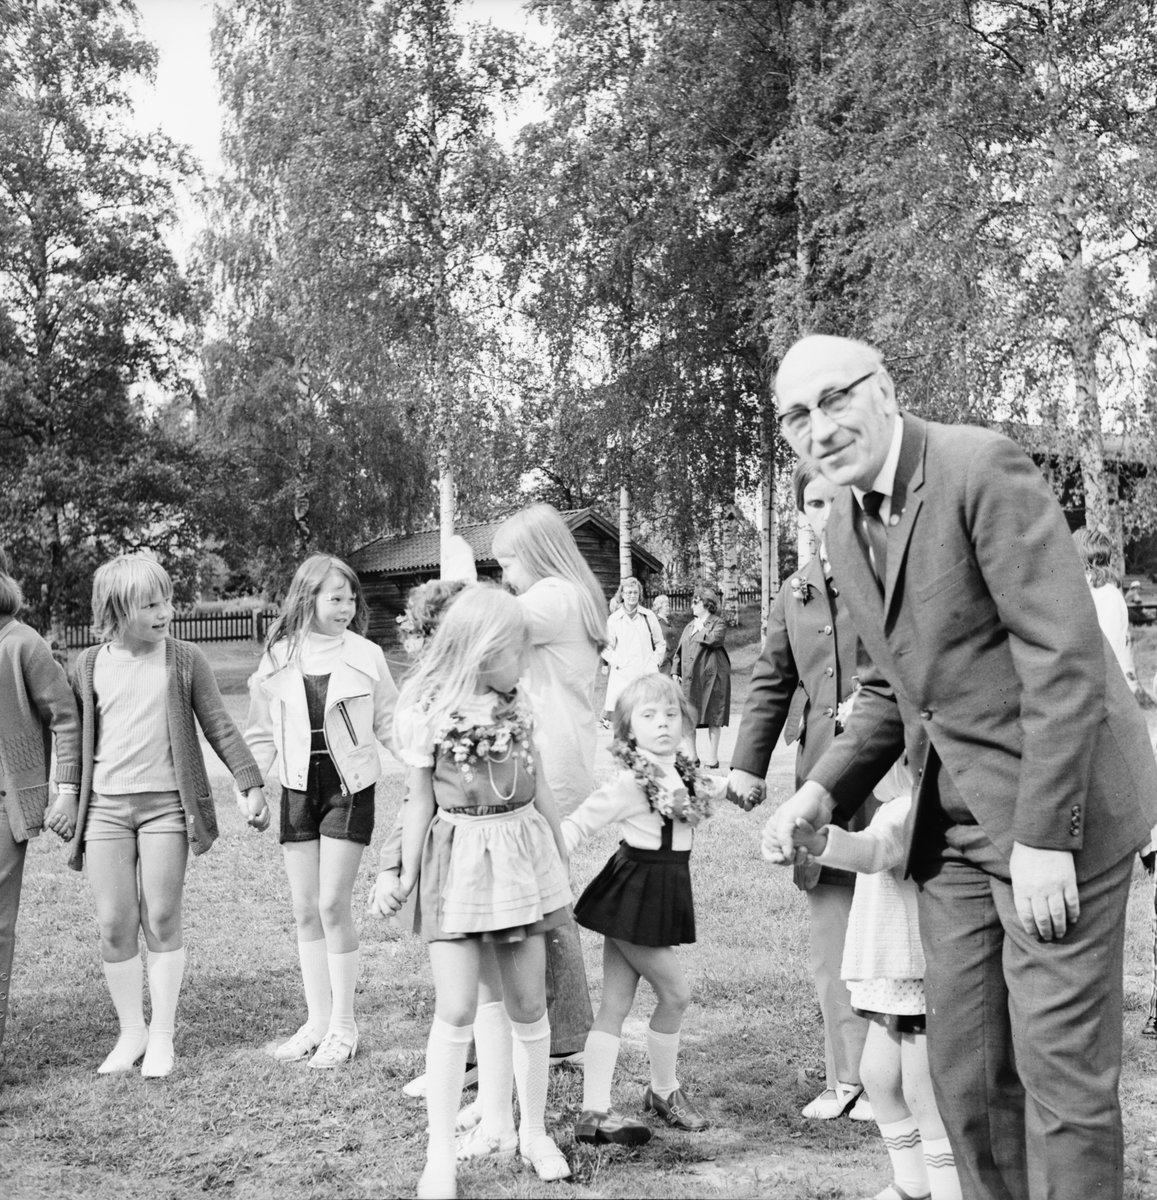 Fornhemmet i Arbrå, midsommarfest, juni 1972.
Några av barnen är Inger Jonsson (nr 2 från vänster) och i mitten Ingela Jönsson och Carina Jonsson.